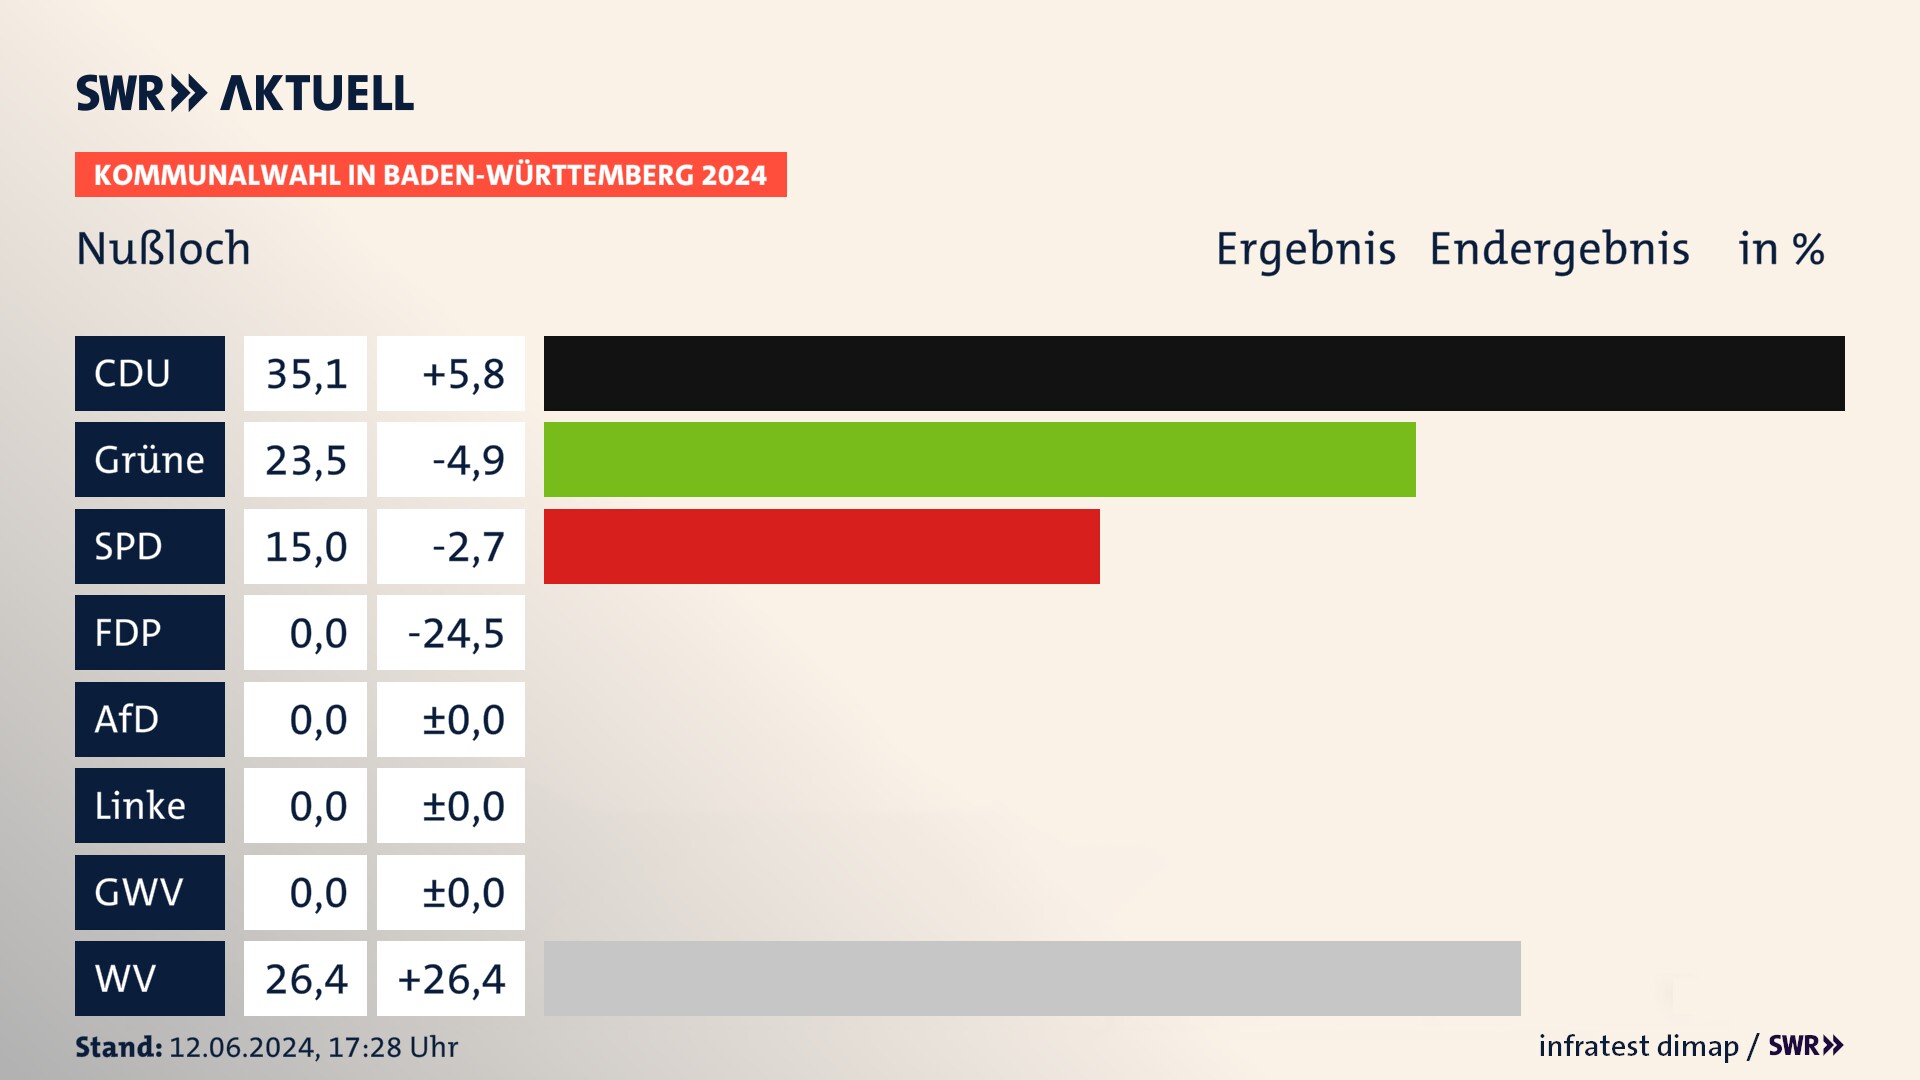 Kommunalwahl 2024 Endergebnis Zweitstimme für Nußloch. In Nußloch erzielt die CDU 35,1 Prozent der gültigen  Stimmen. Die Grünen landen bei 23,5 Prozent. Die SPD erreicht 15,0 Prozent. Die Wählervereinigungen kommen auf 26,4 Prozent.